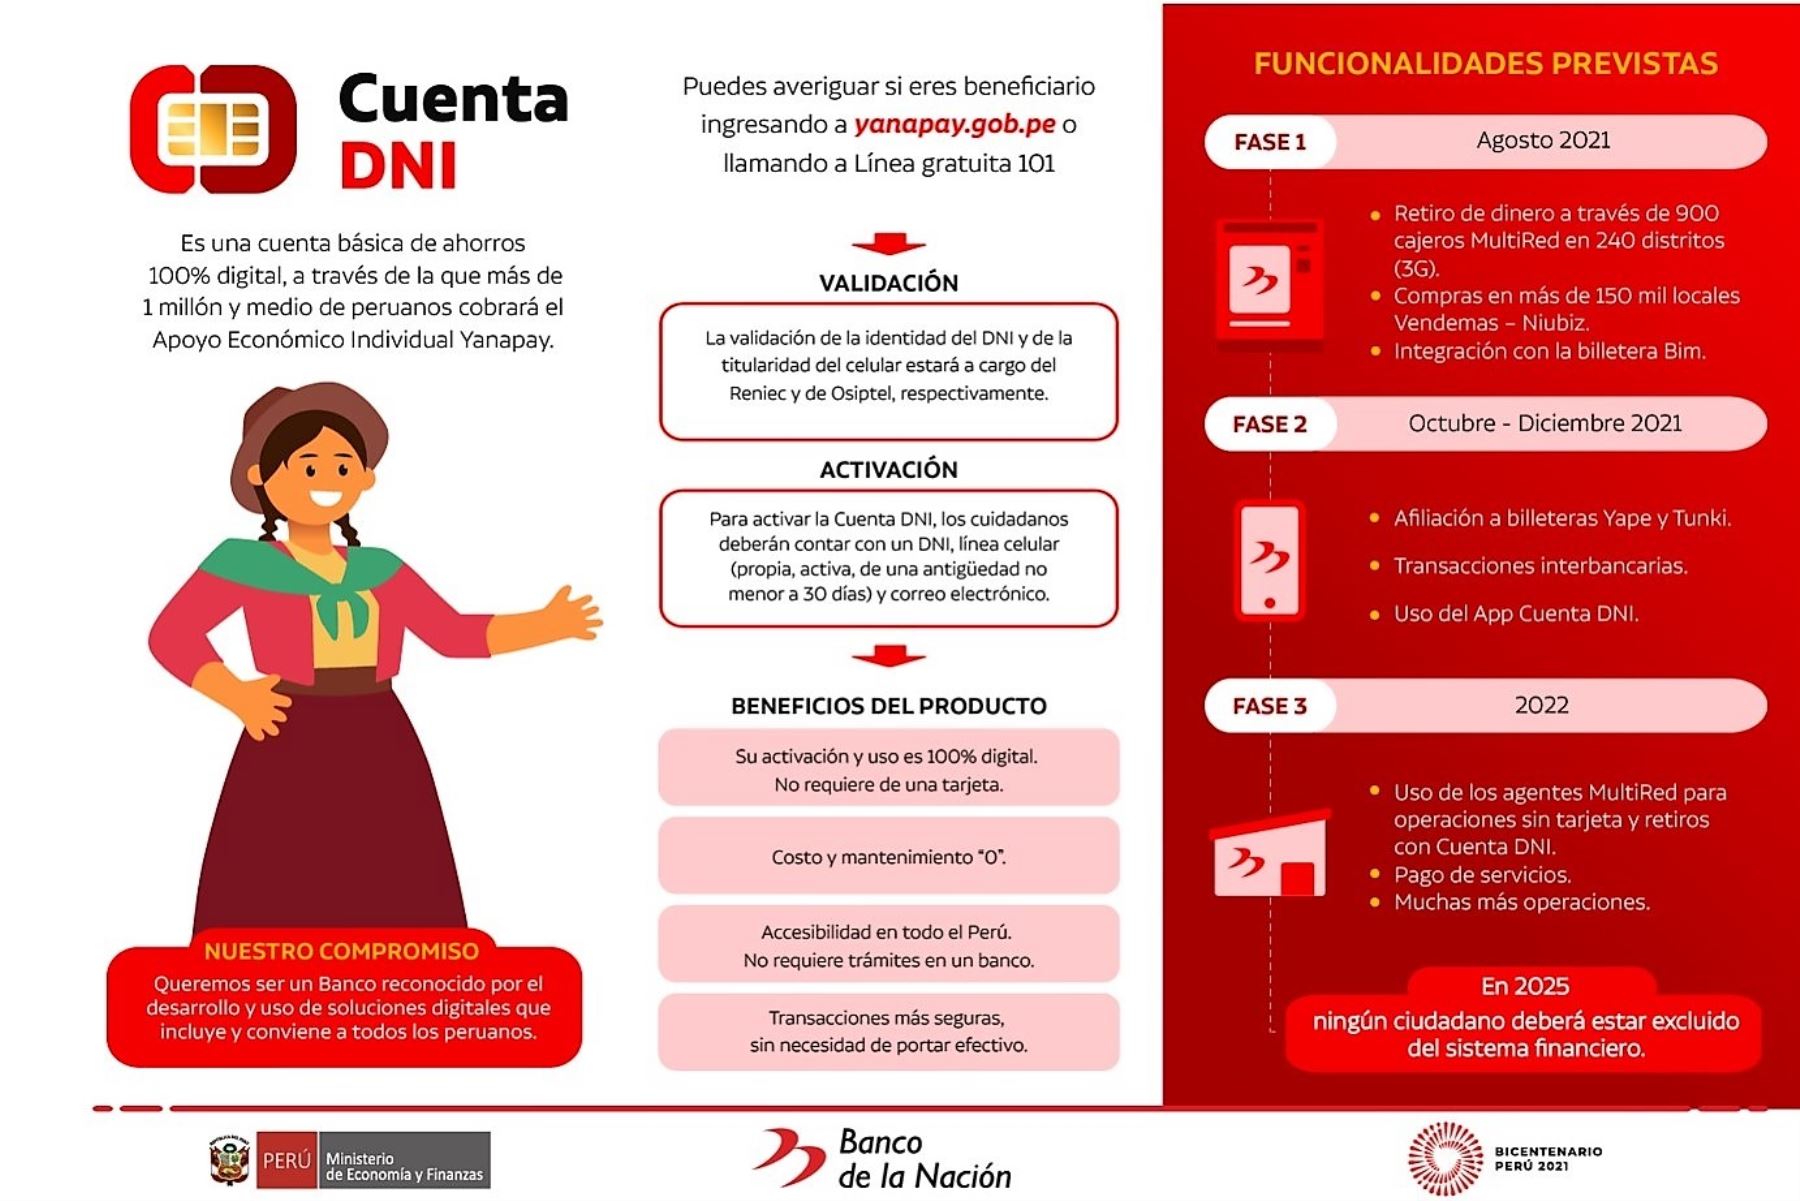 Banco de la Nación facilita la obtención de la Cuenta DNI para acceder al bono Yanapay Perú. Imagen: Banco de la Nación/Difusión.